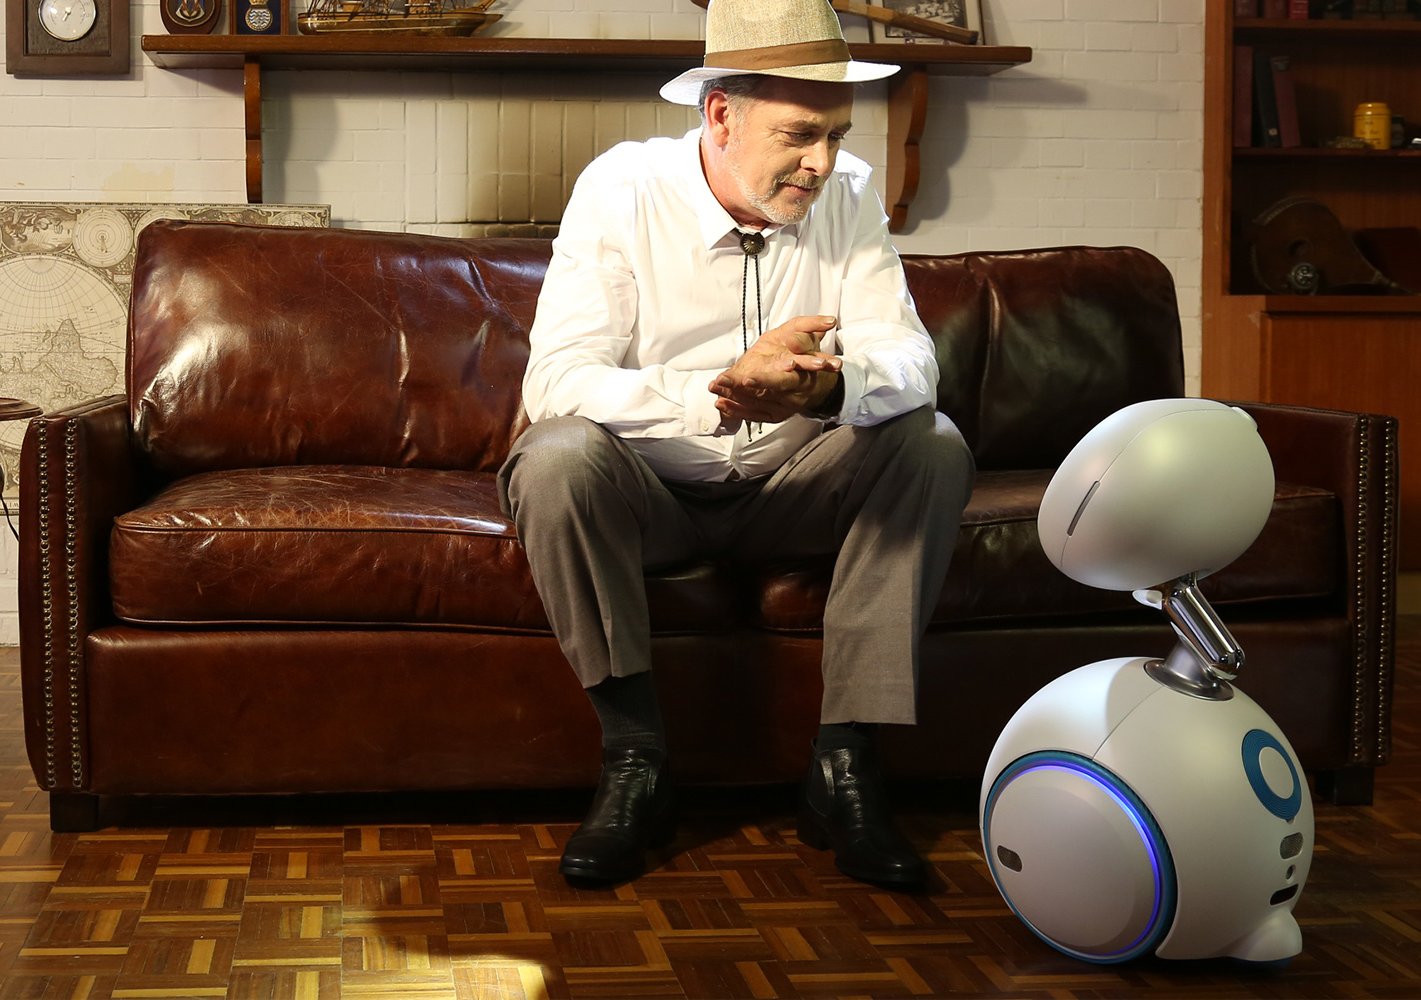 Roboty budú do roku 2033 pomáhať až s tretinou domácich prác, tvrdia vedci